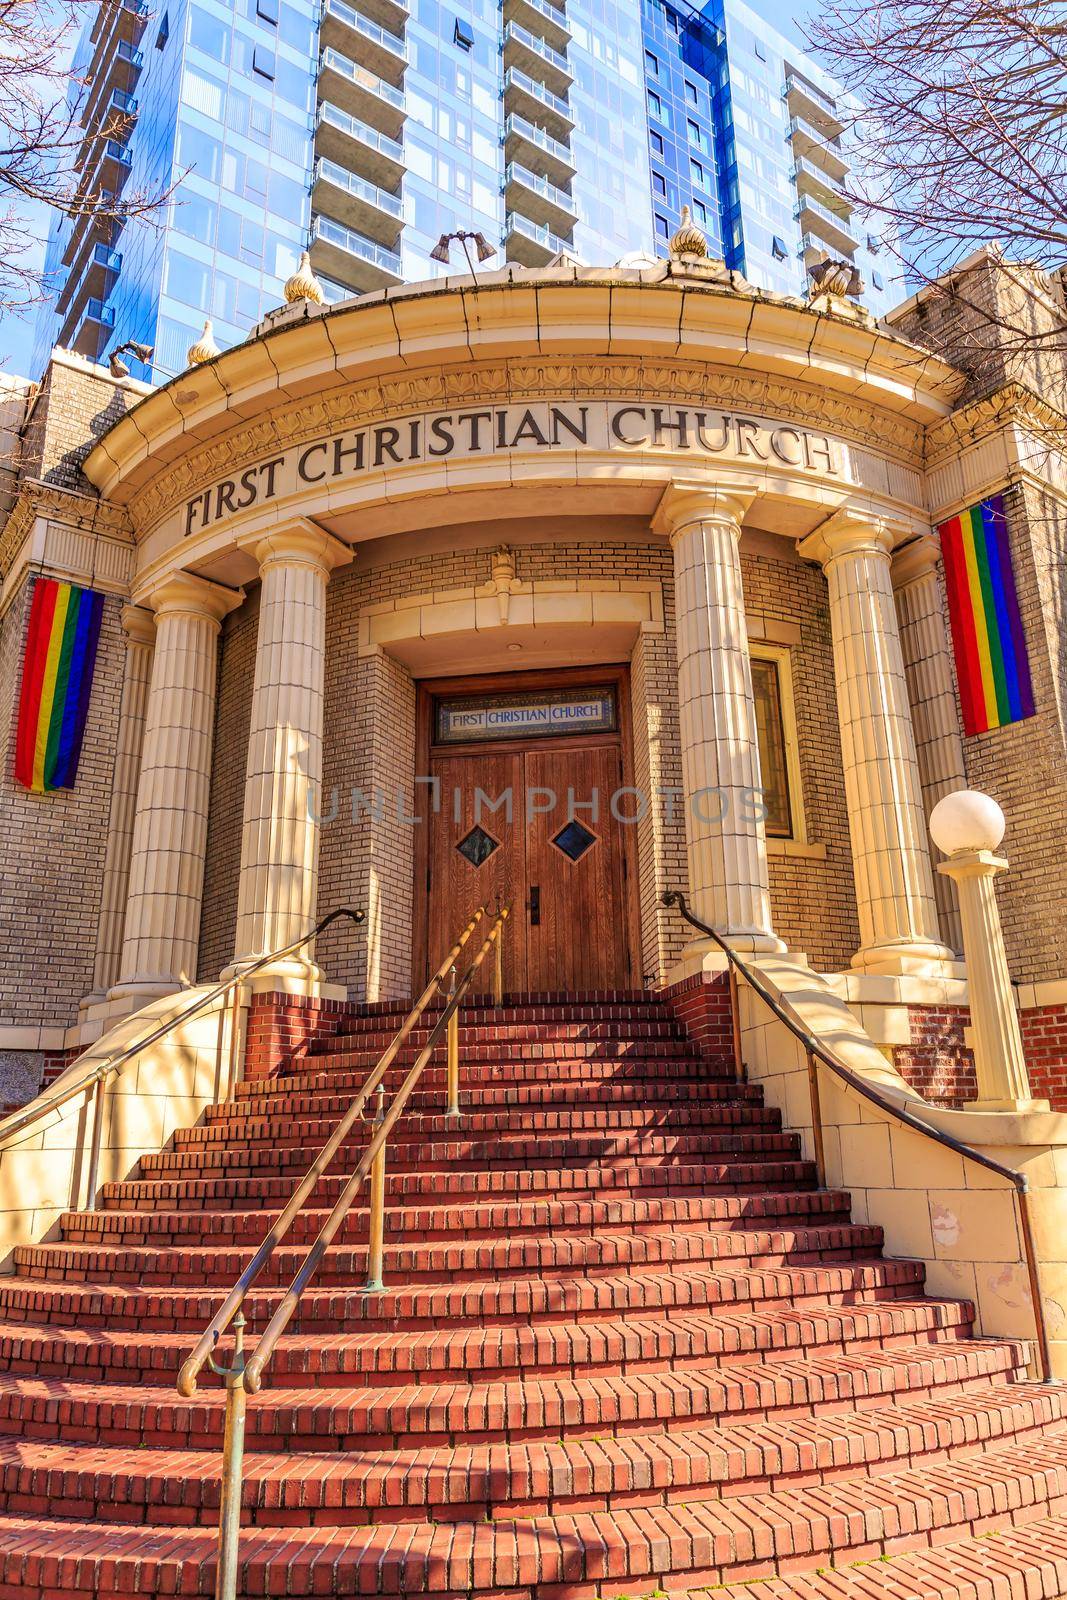 First Christian Church by gepeng